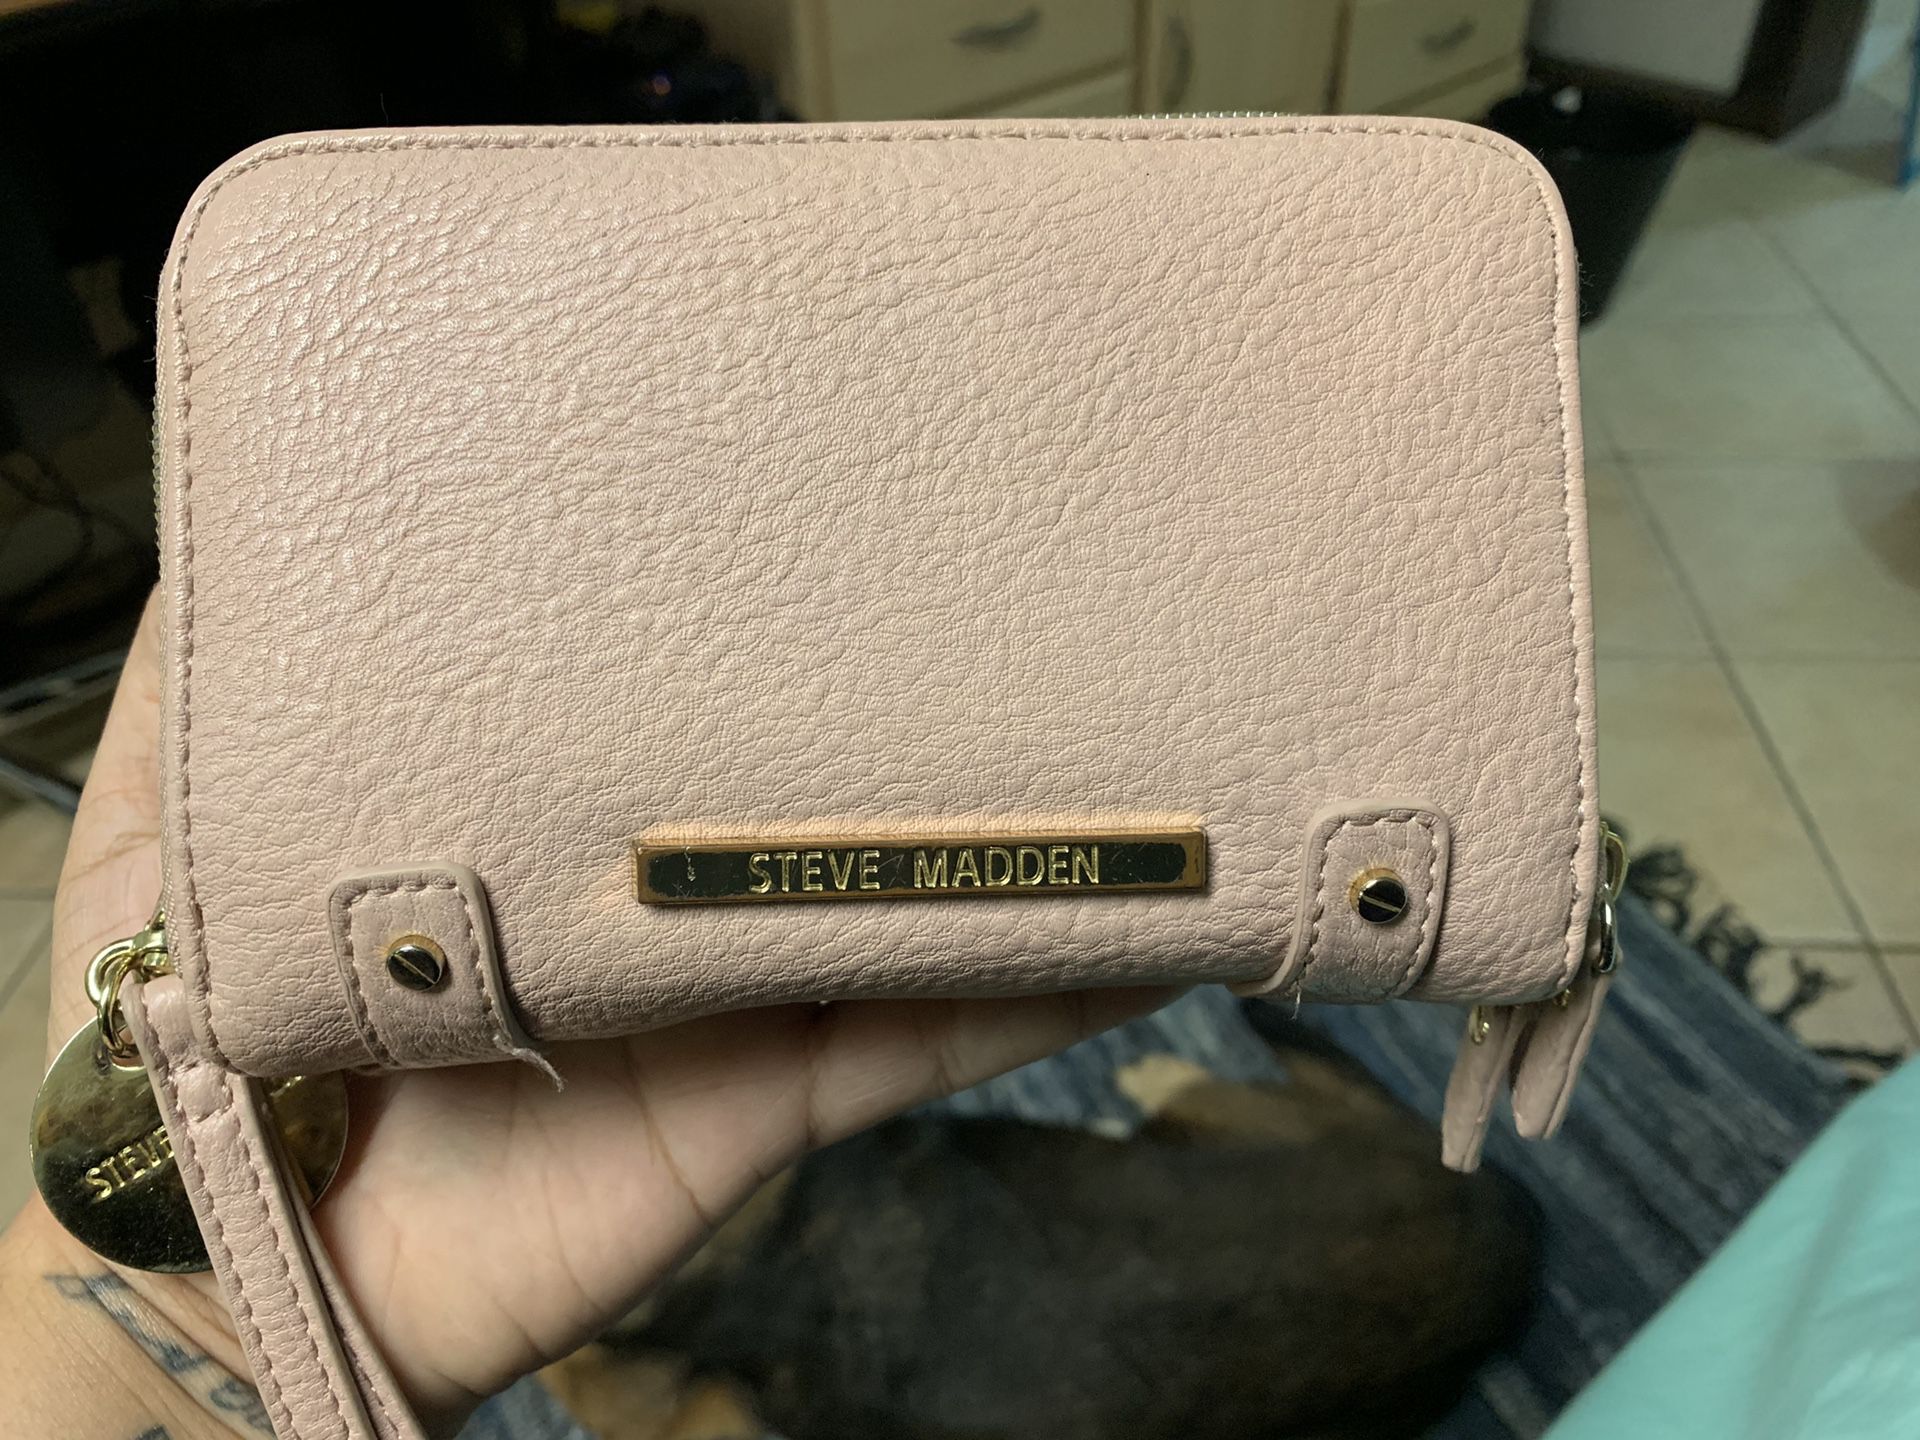 Steve Madden wallet / small clutch purse